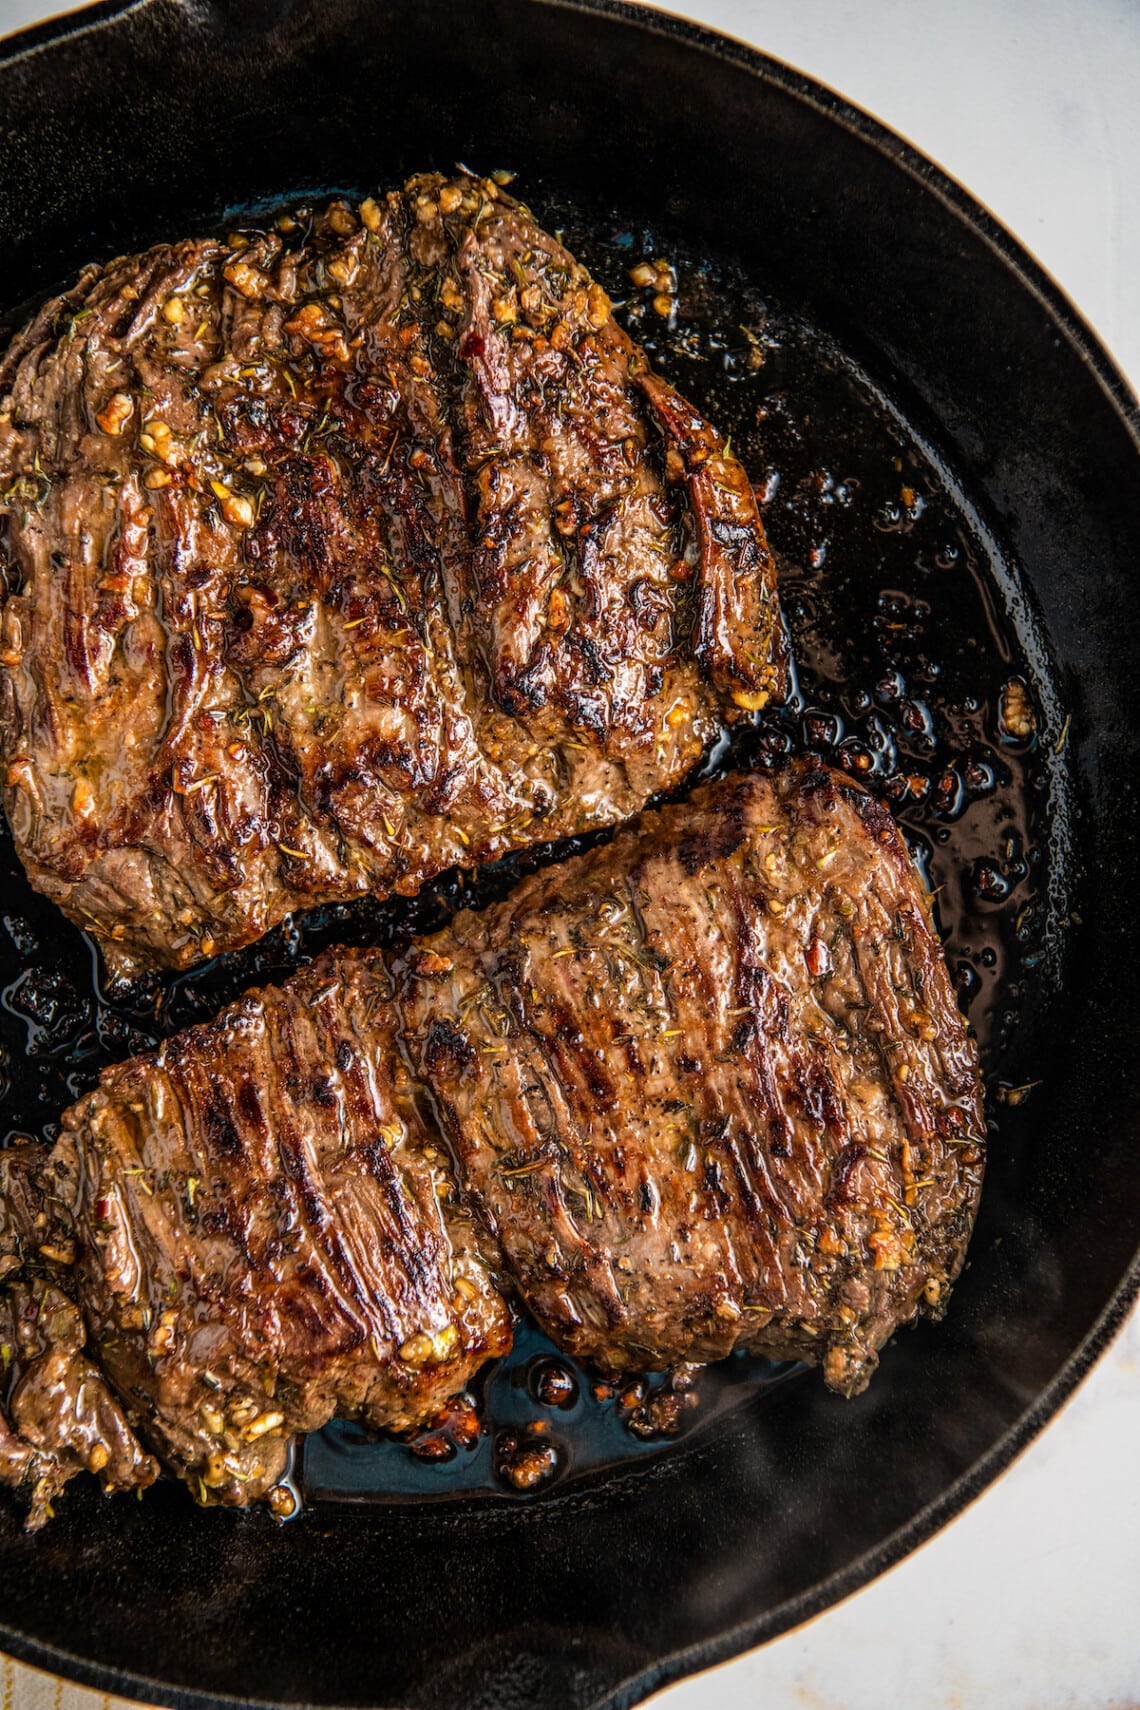 How to Cook Skirt Steak | Easy Dinner Ideas